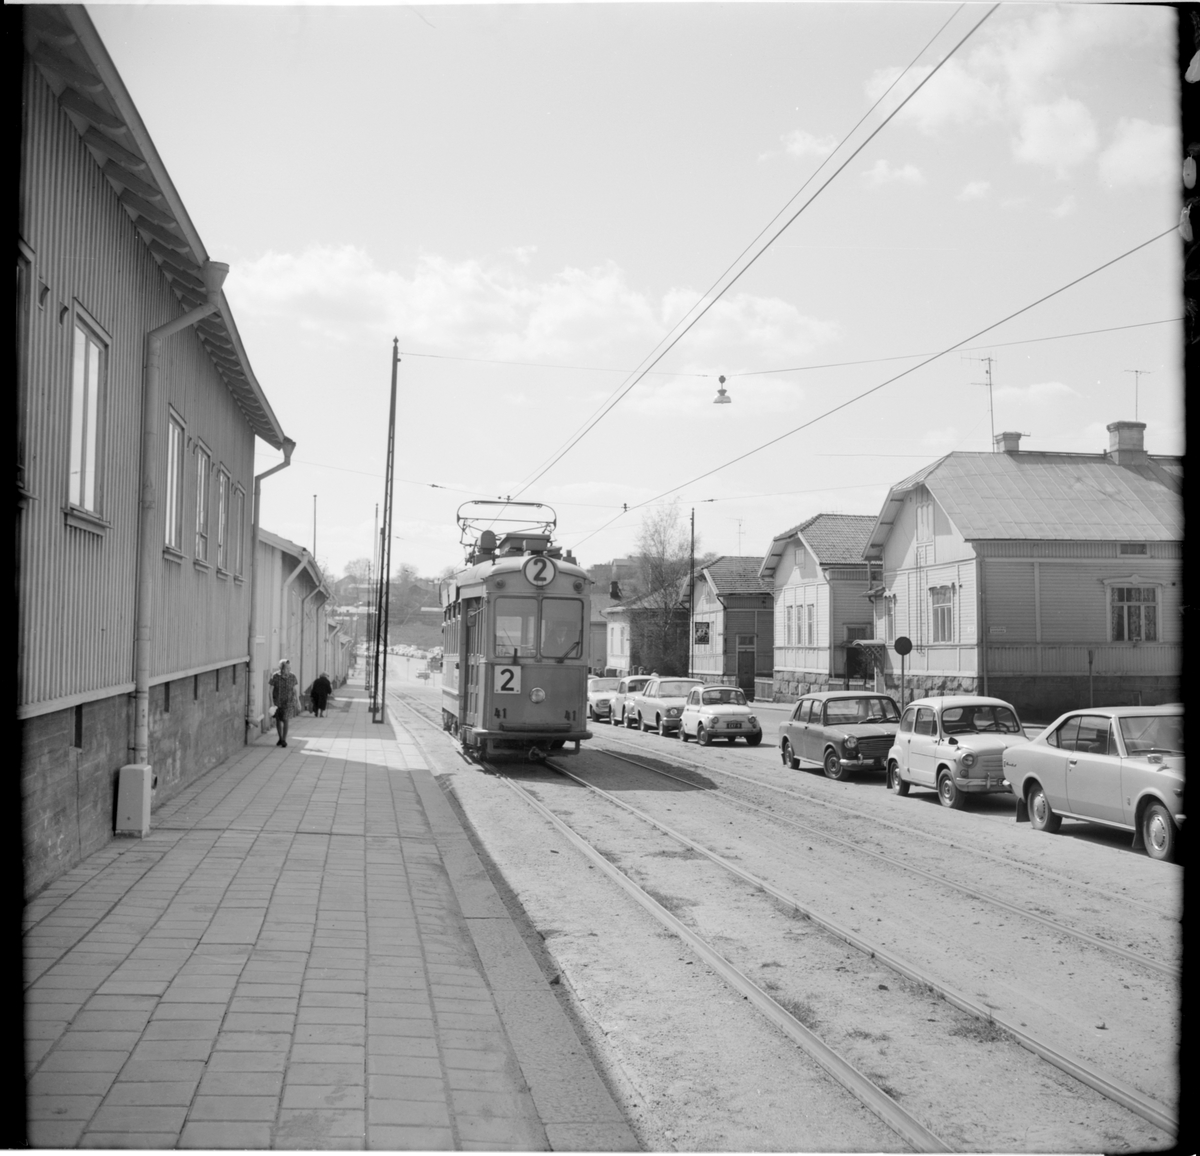 Turun Kaupungin Liikennelaitos, TuKL 39 "gasmasksvagn" linje 2.